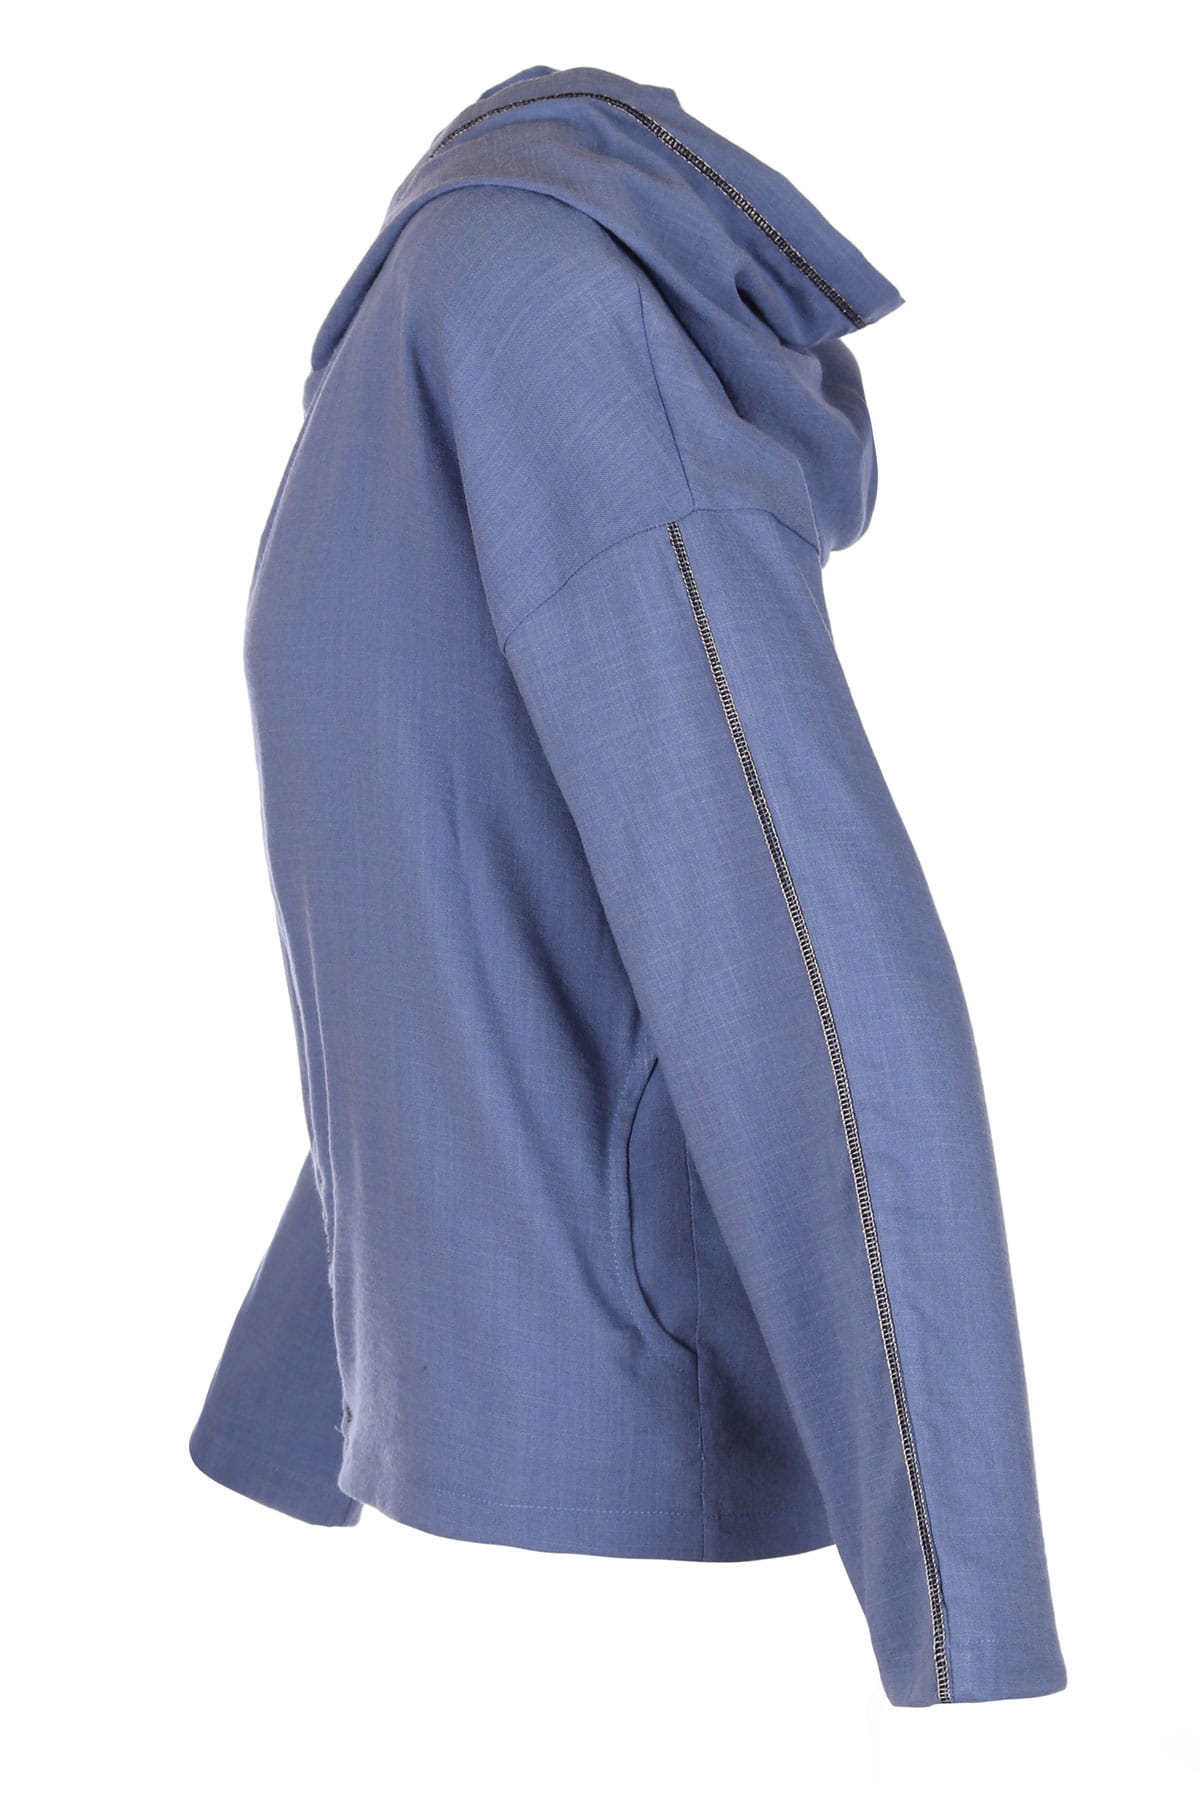 Komplet lniany bluza z kapturem + spodnie niebieski